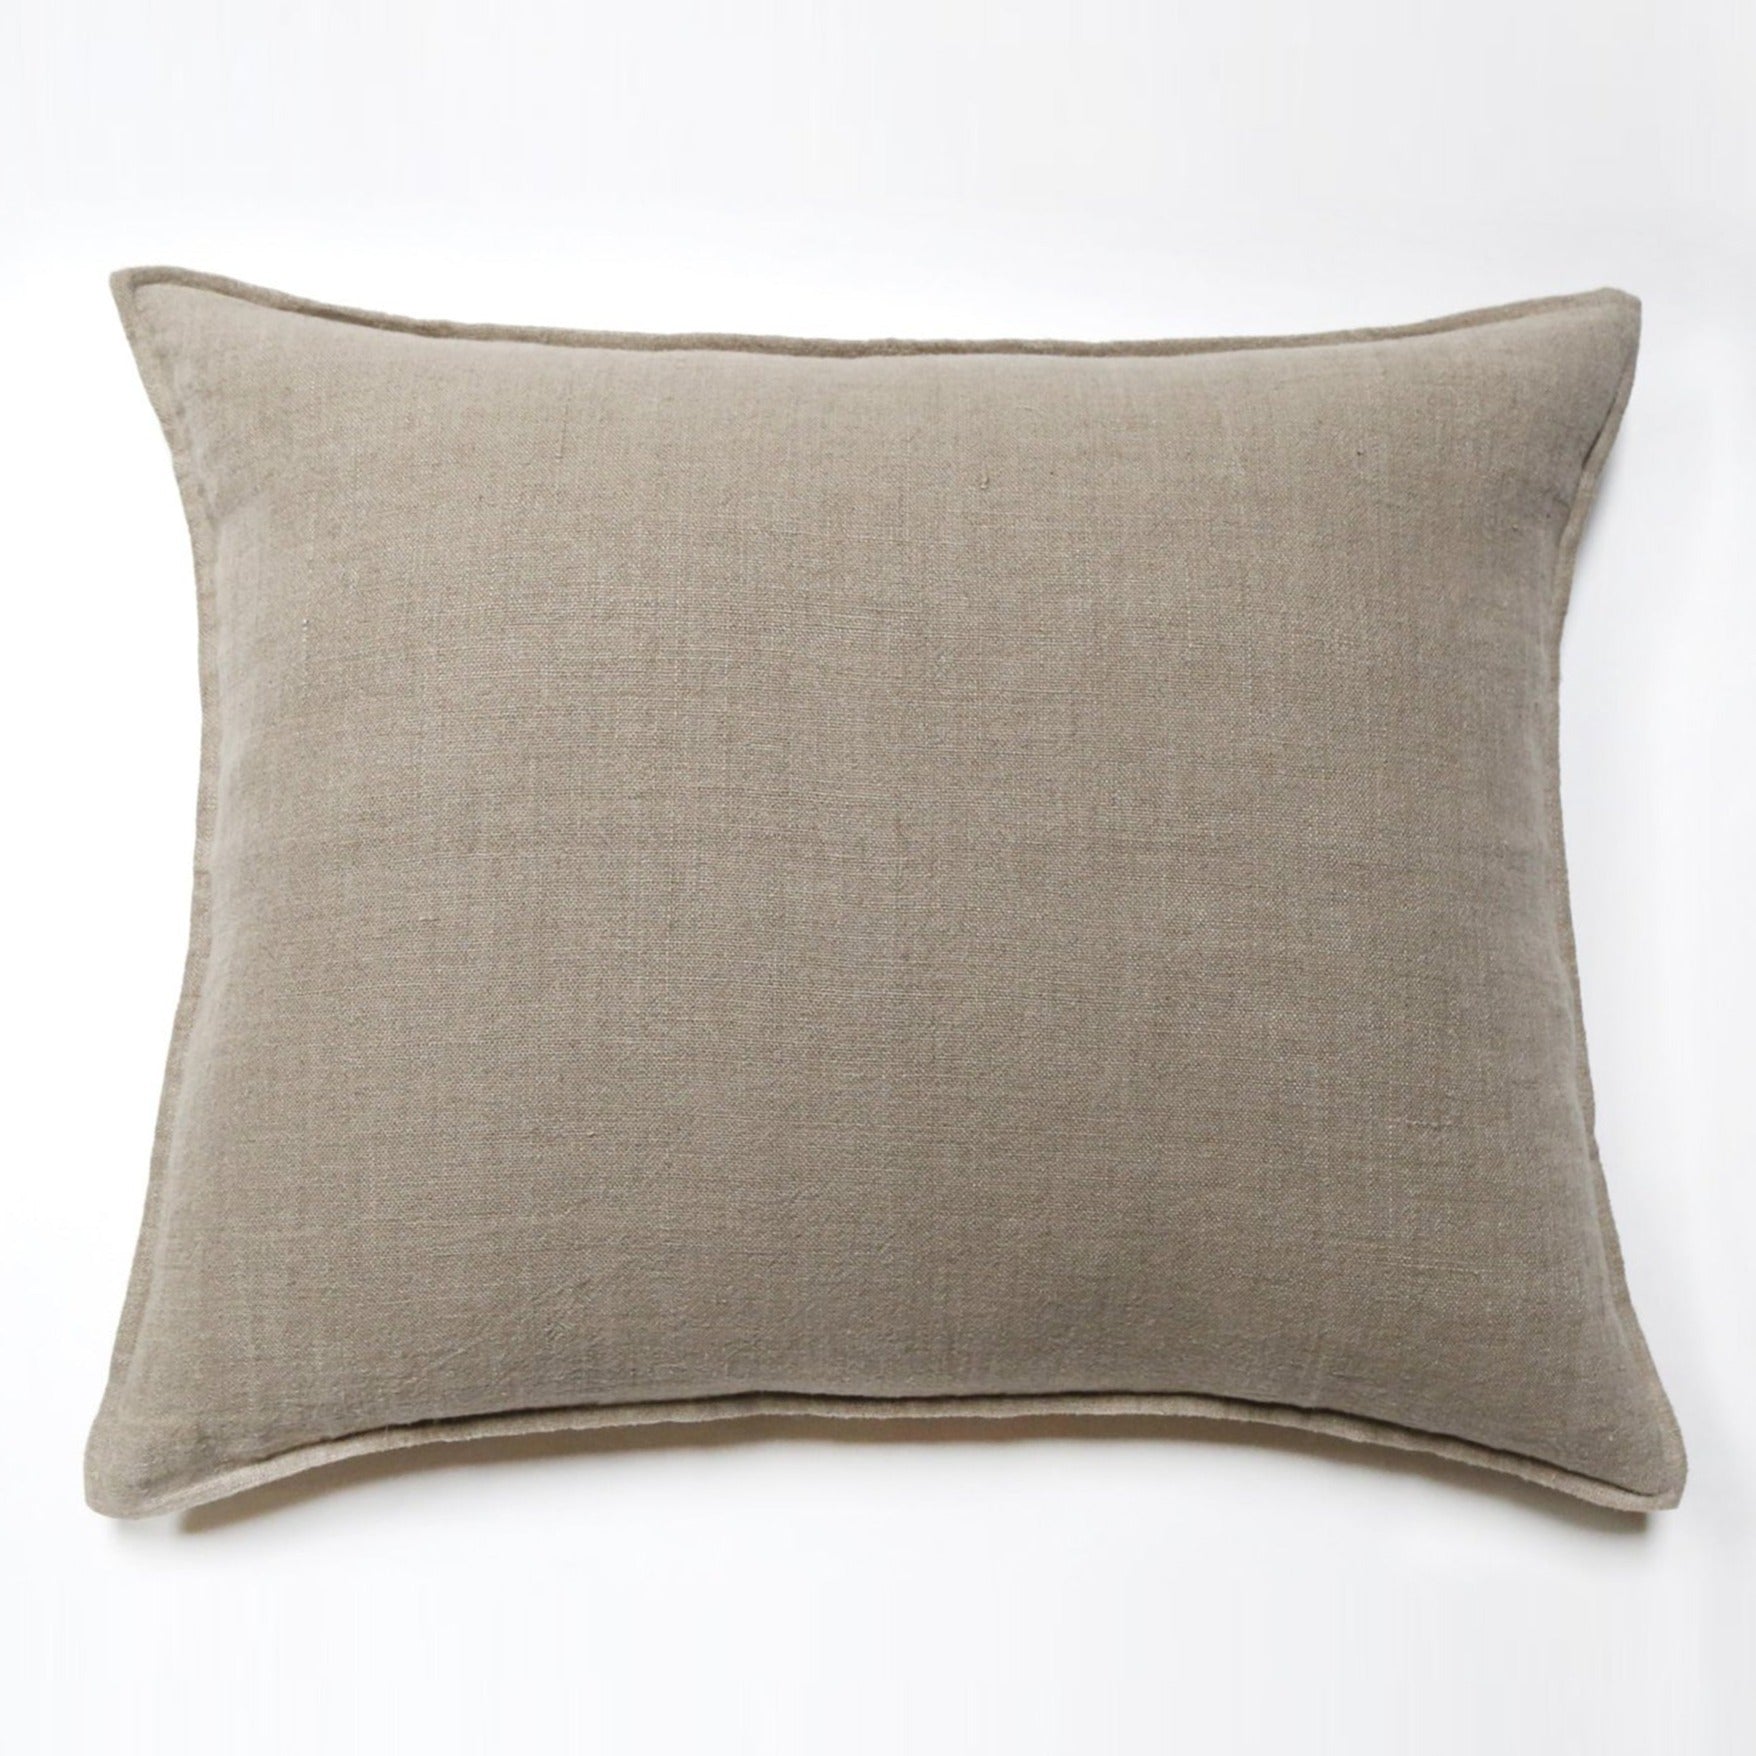 Montauk Big Pillow, Natural